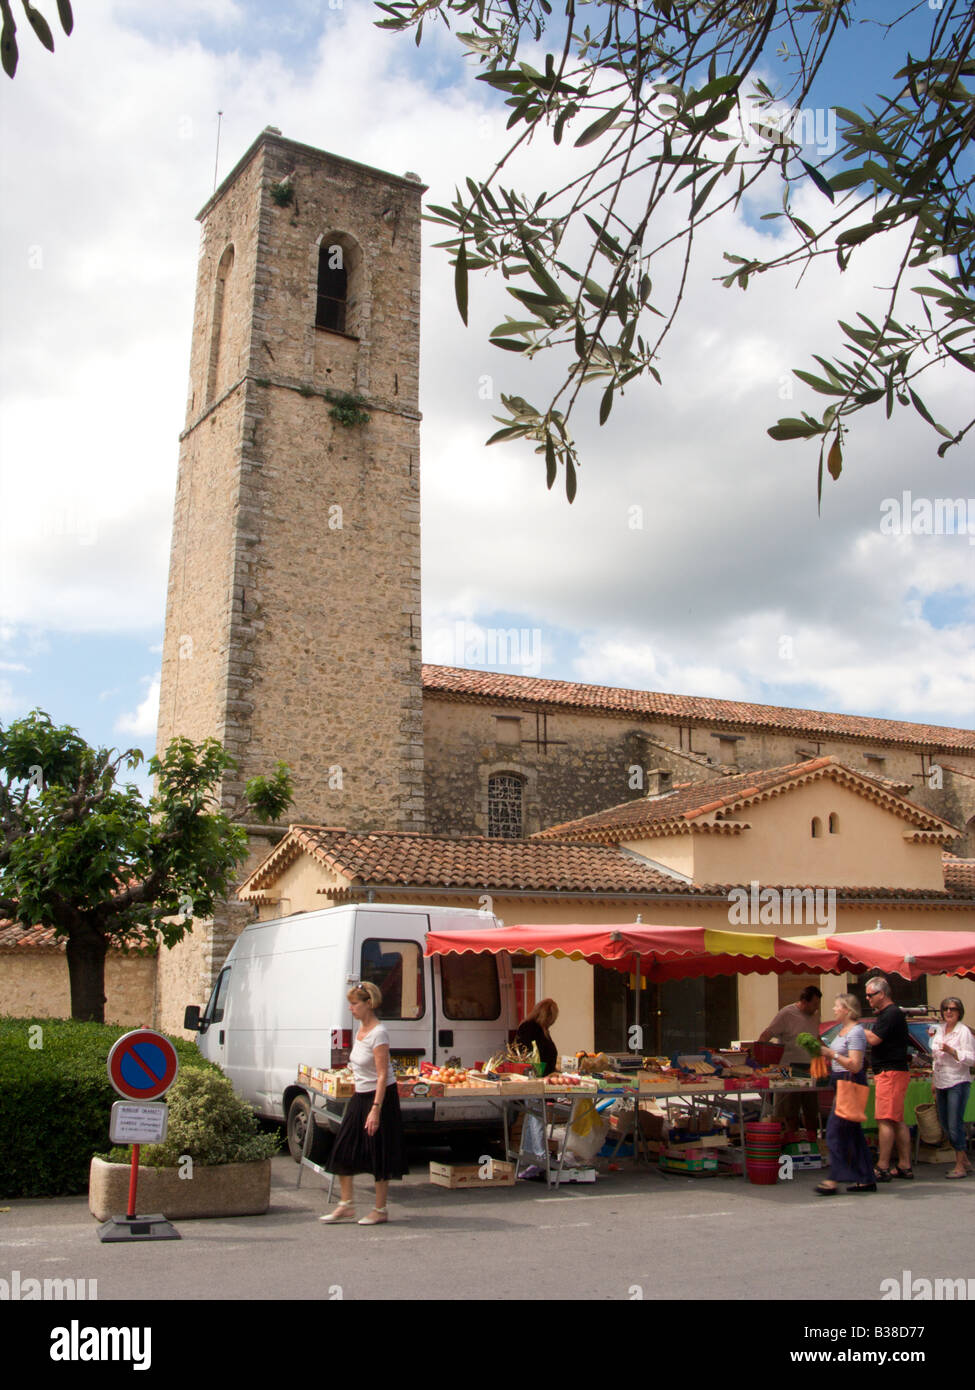 Les étals de marché en face de l'église pittoresque dans le village de Fayence, Var, France Banque D'Images